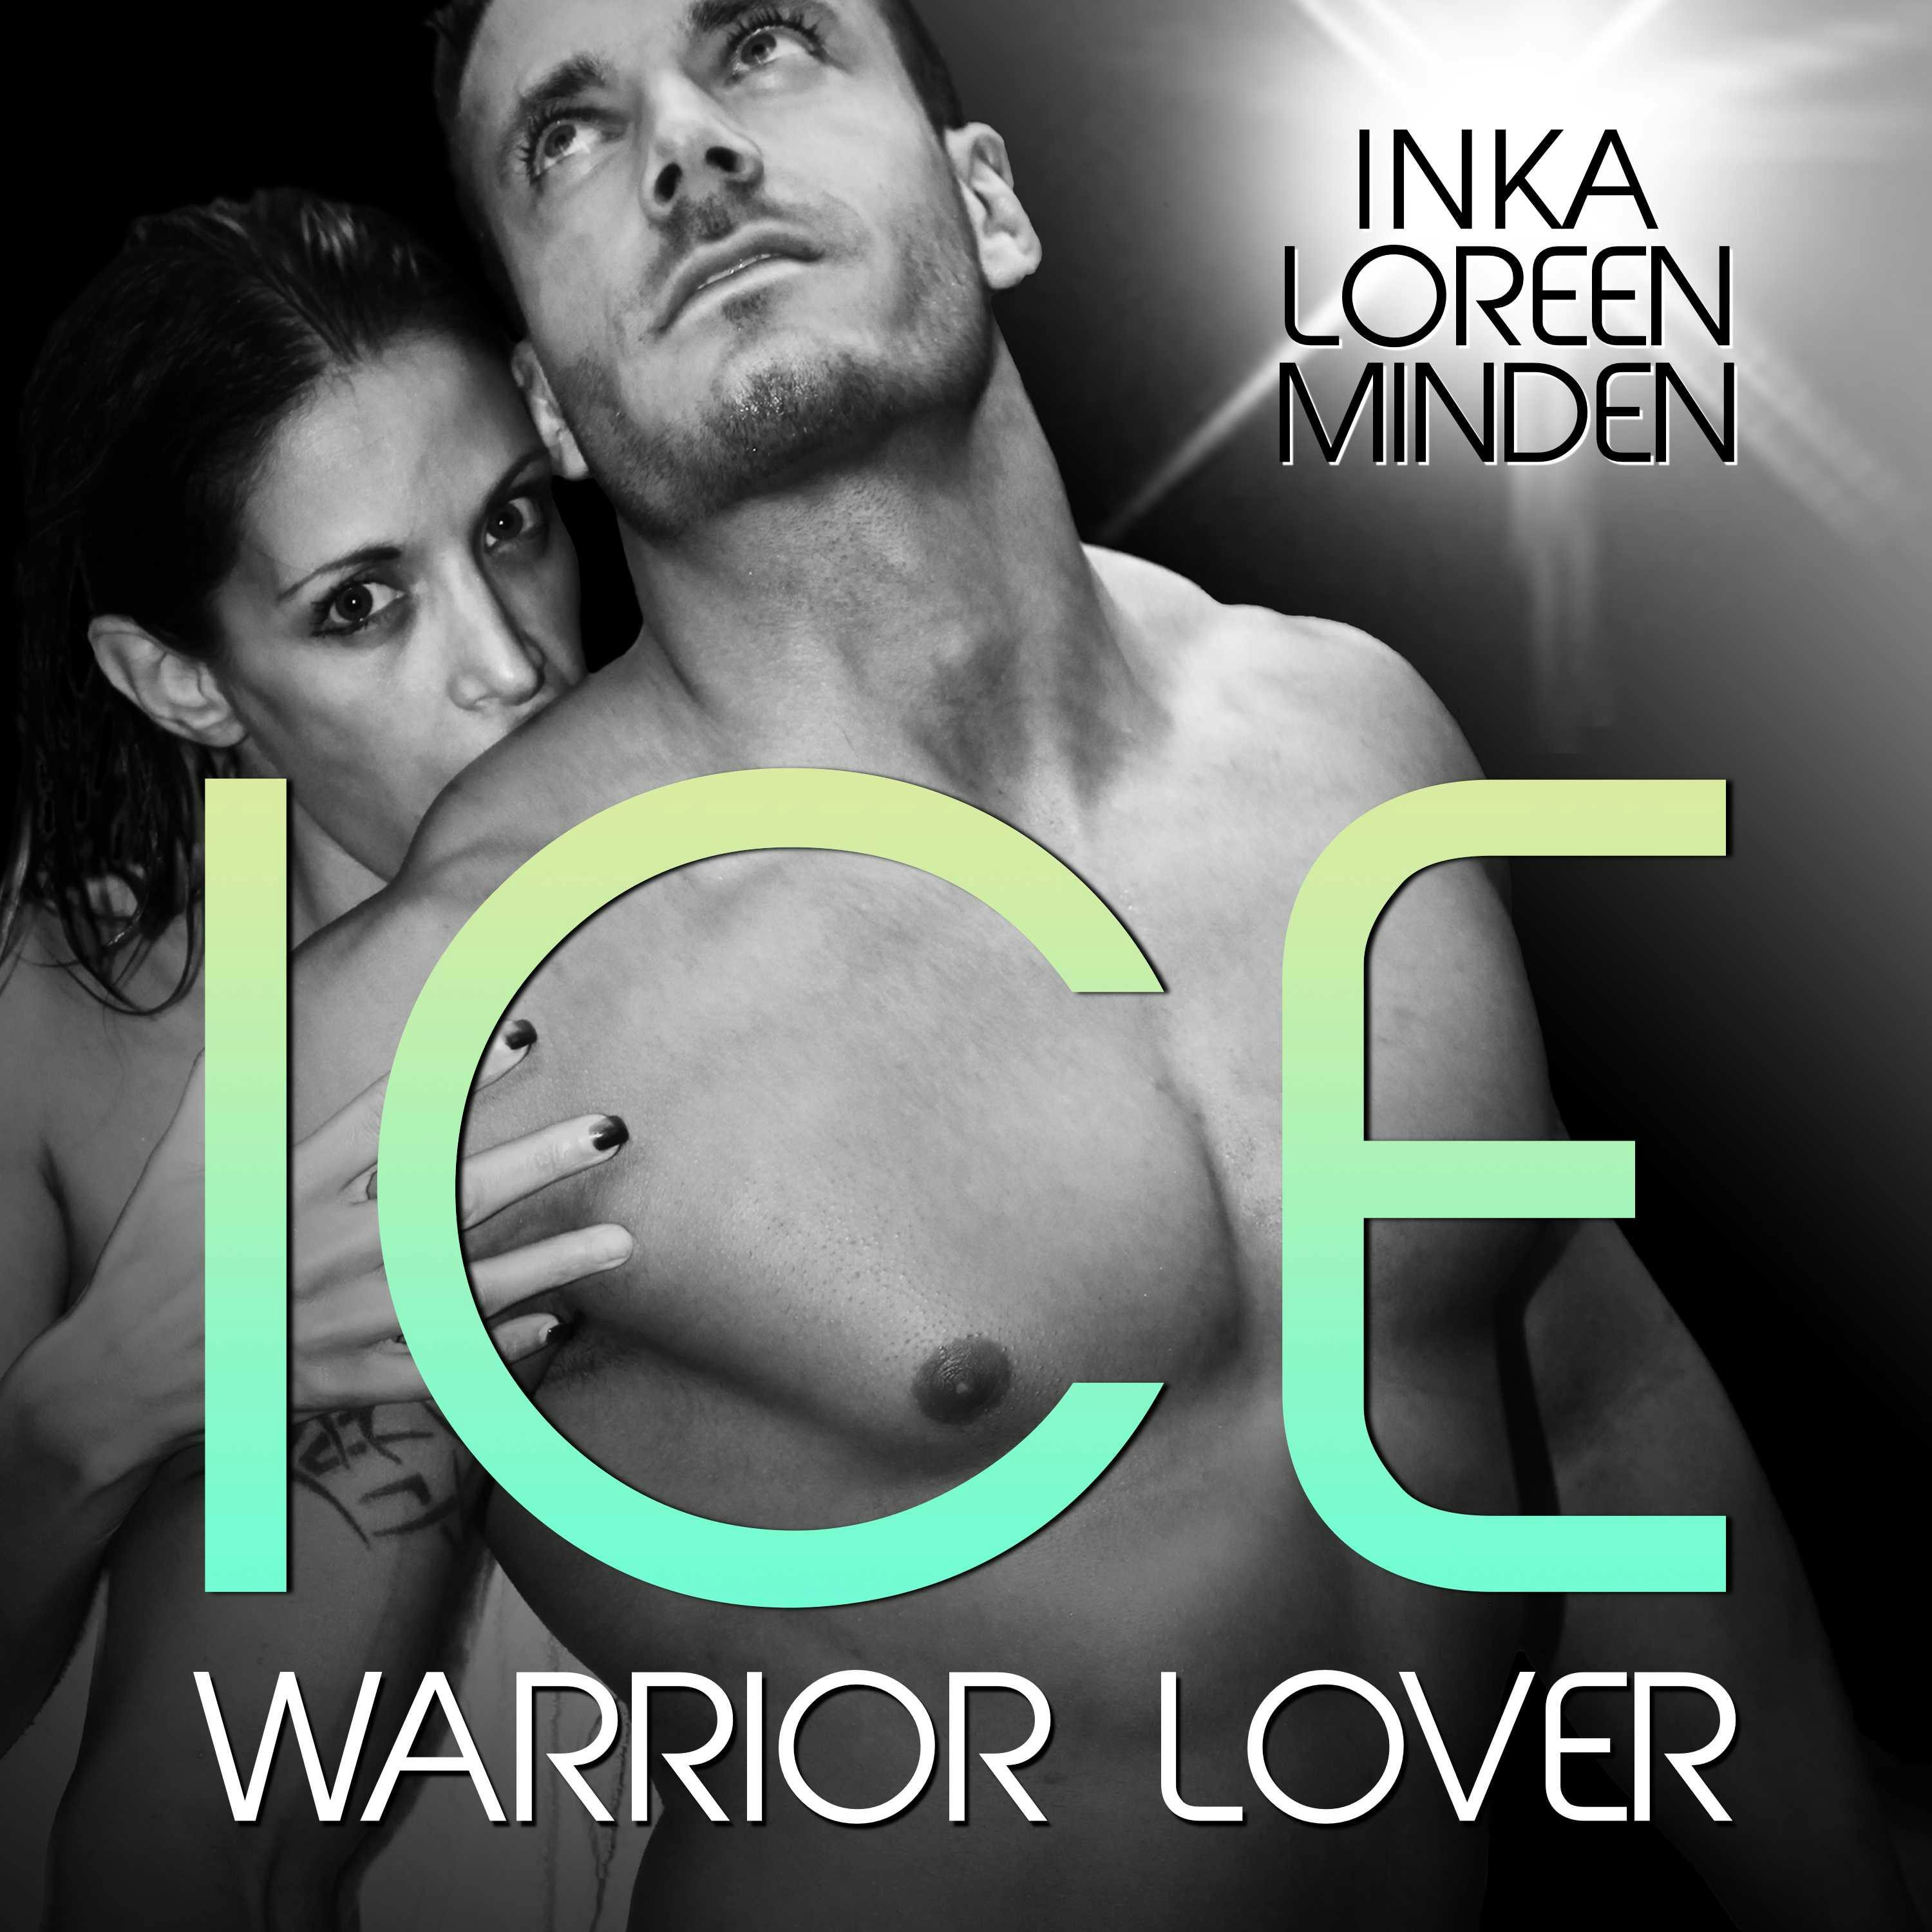 Ice - Warrior Lover 3: Die Warrior Lover Serie - undefined